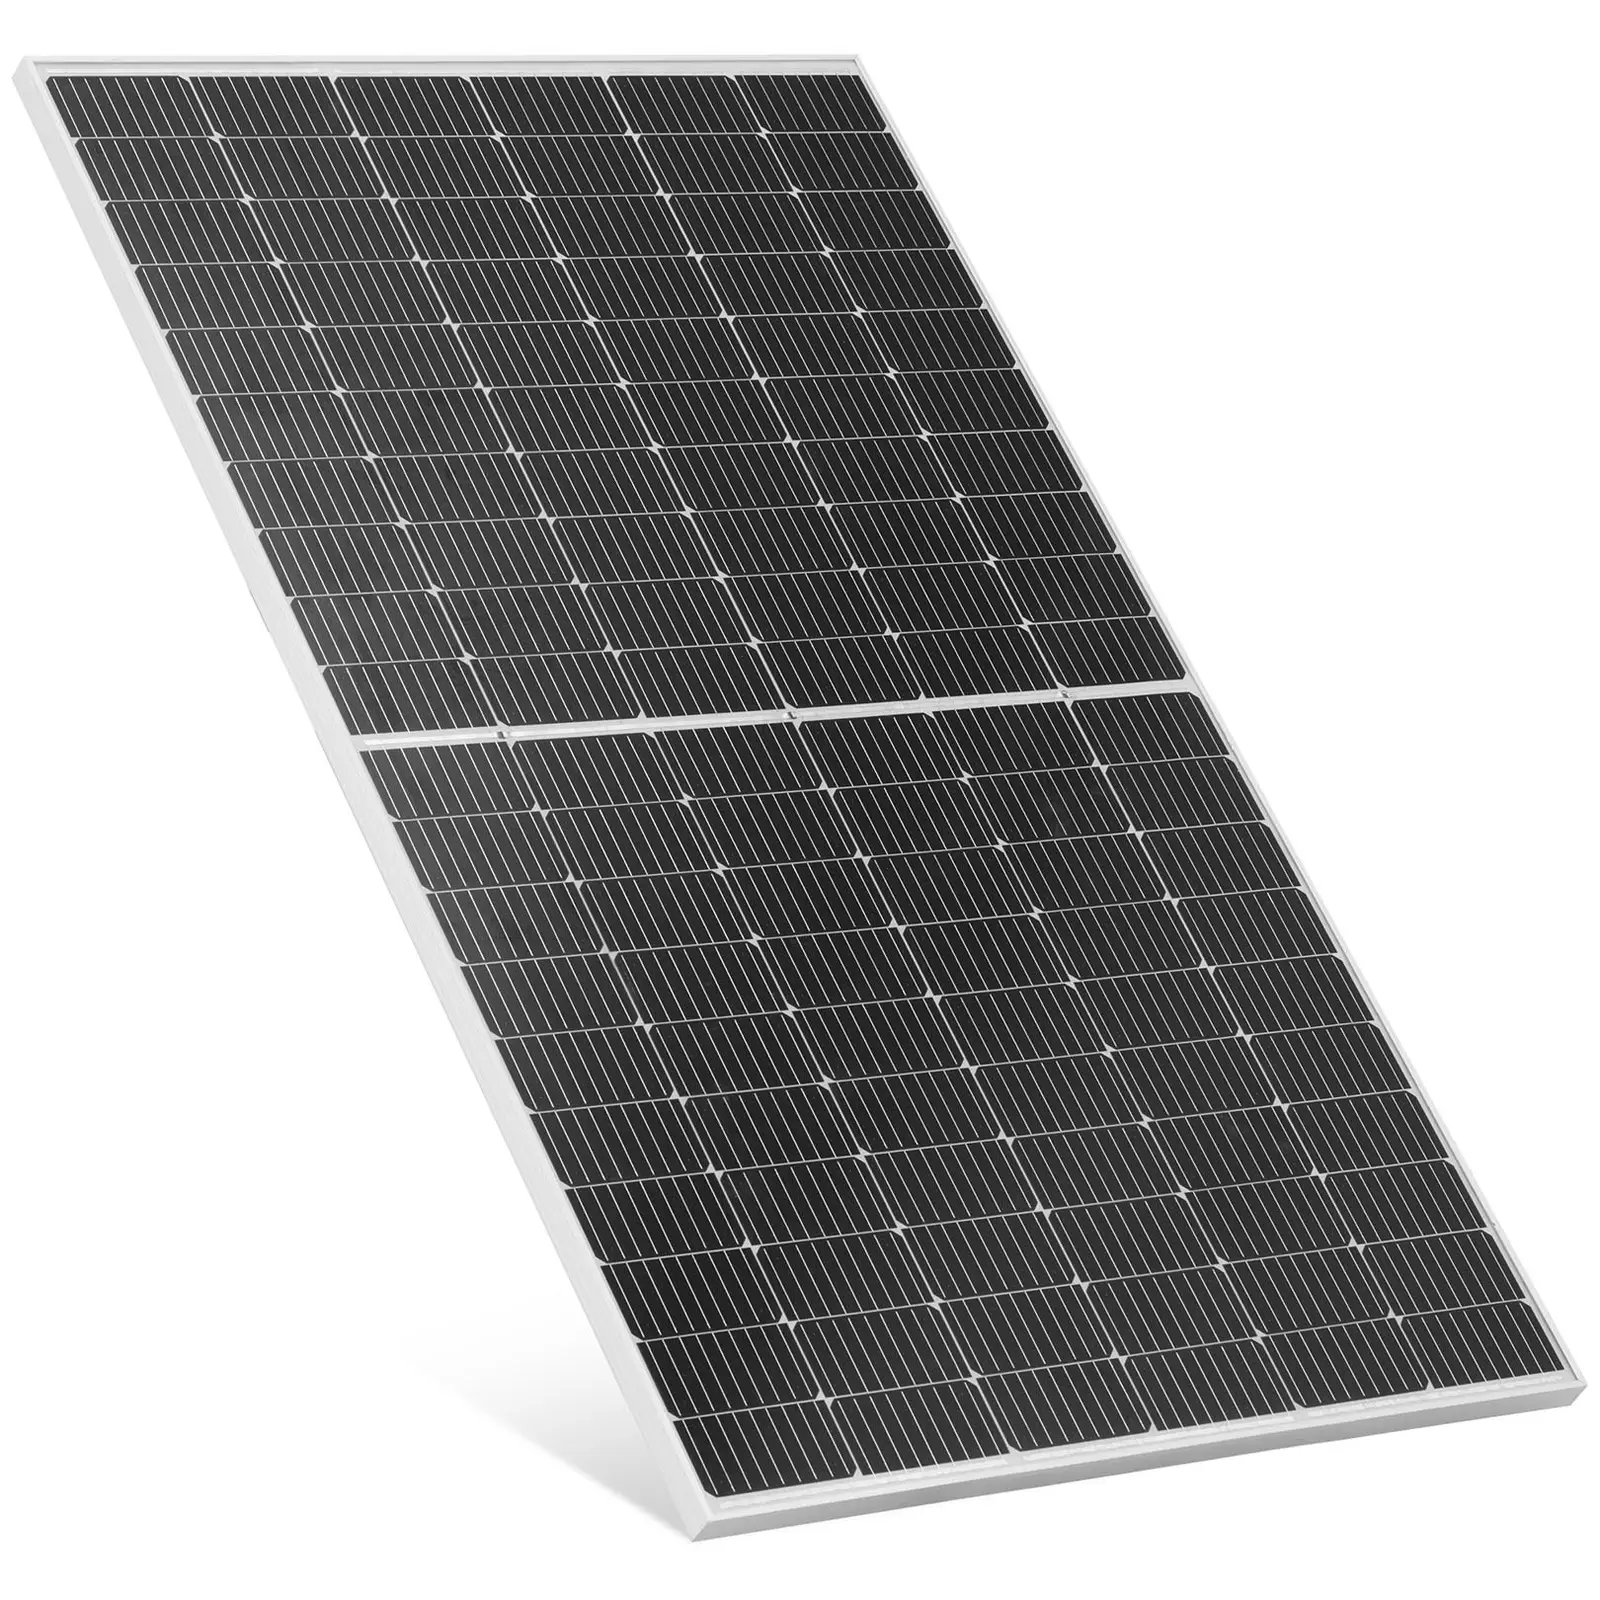 Painel solar monocristalino - 360 W - 41.36 V - com díodo de bypass